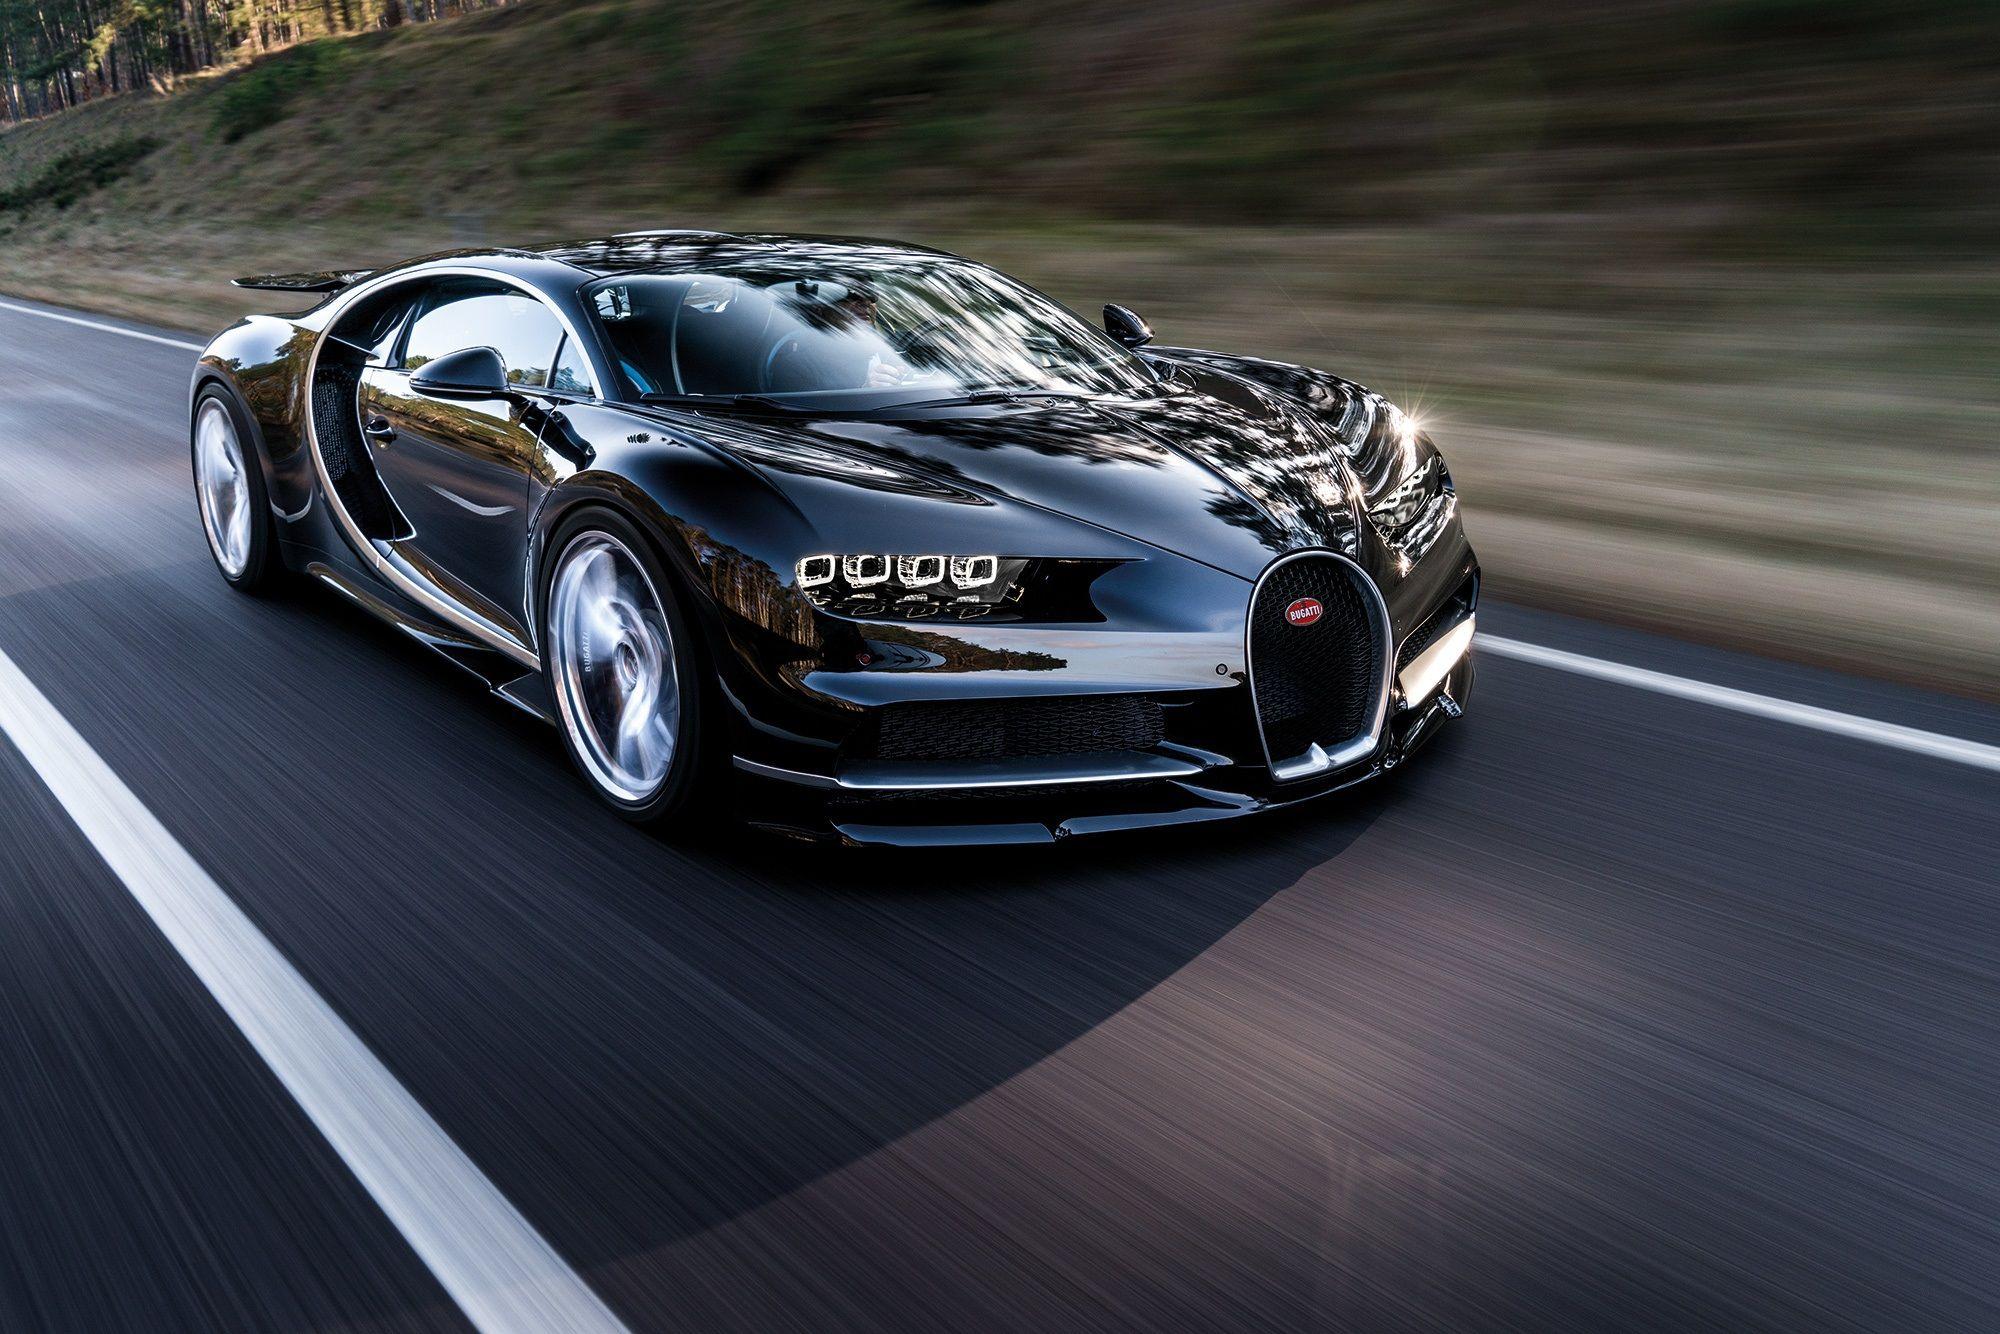 2017 Bugatti Chiron Full HD Wallpapers